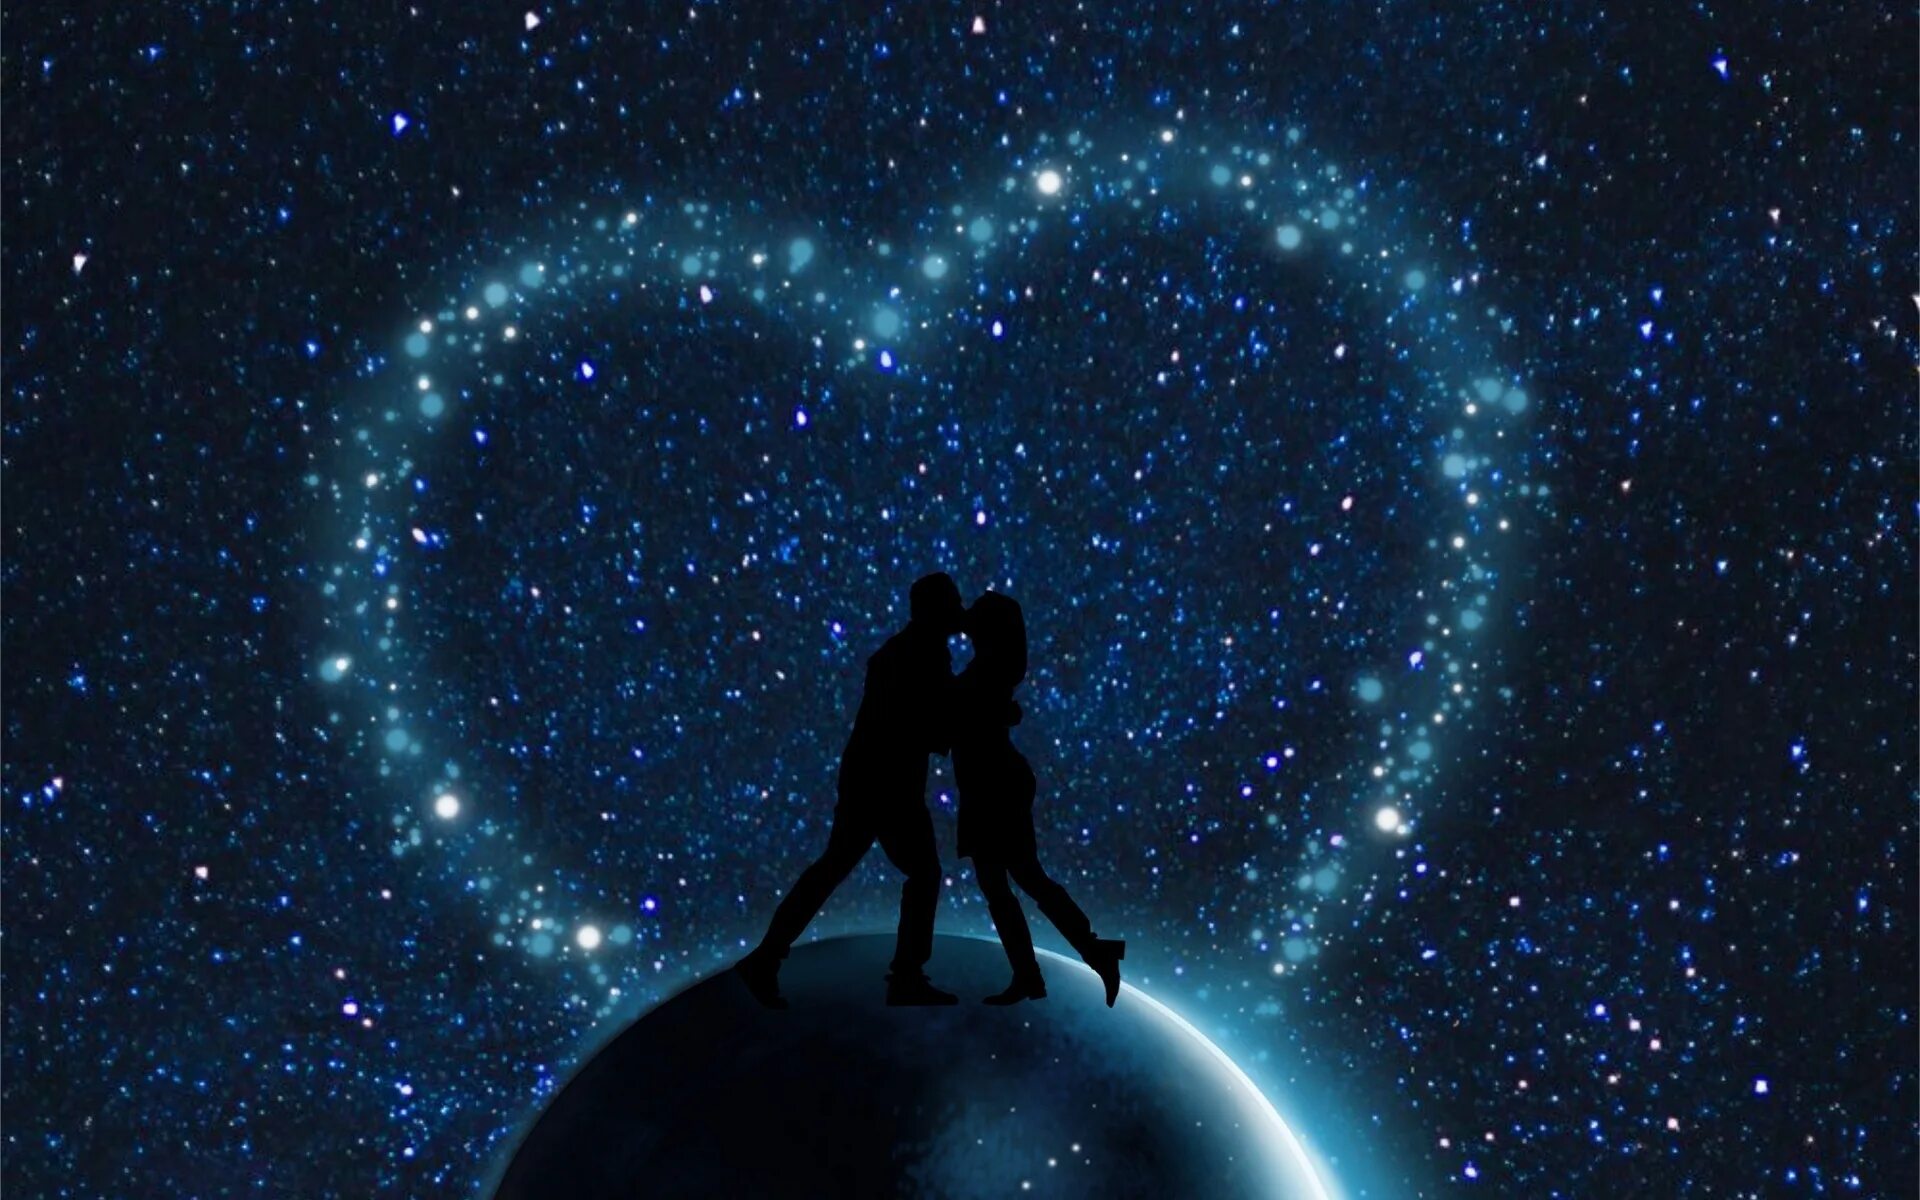 Будь моей звездой будь моей судьбой. Двое под звездами. Космос любовь. Пара на фоне звездного неба. Вселенная и любовь.